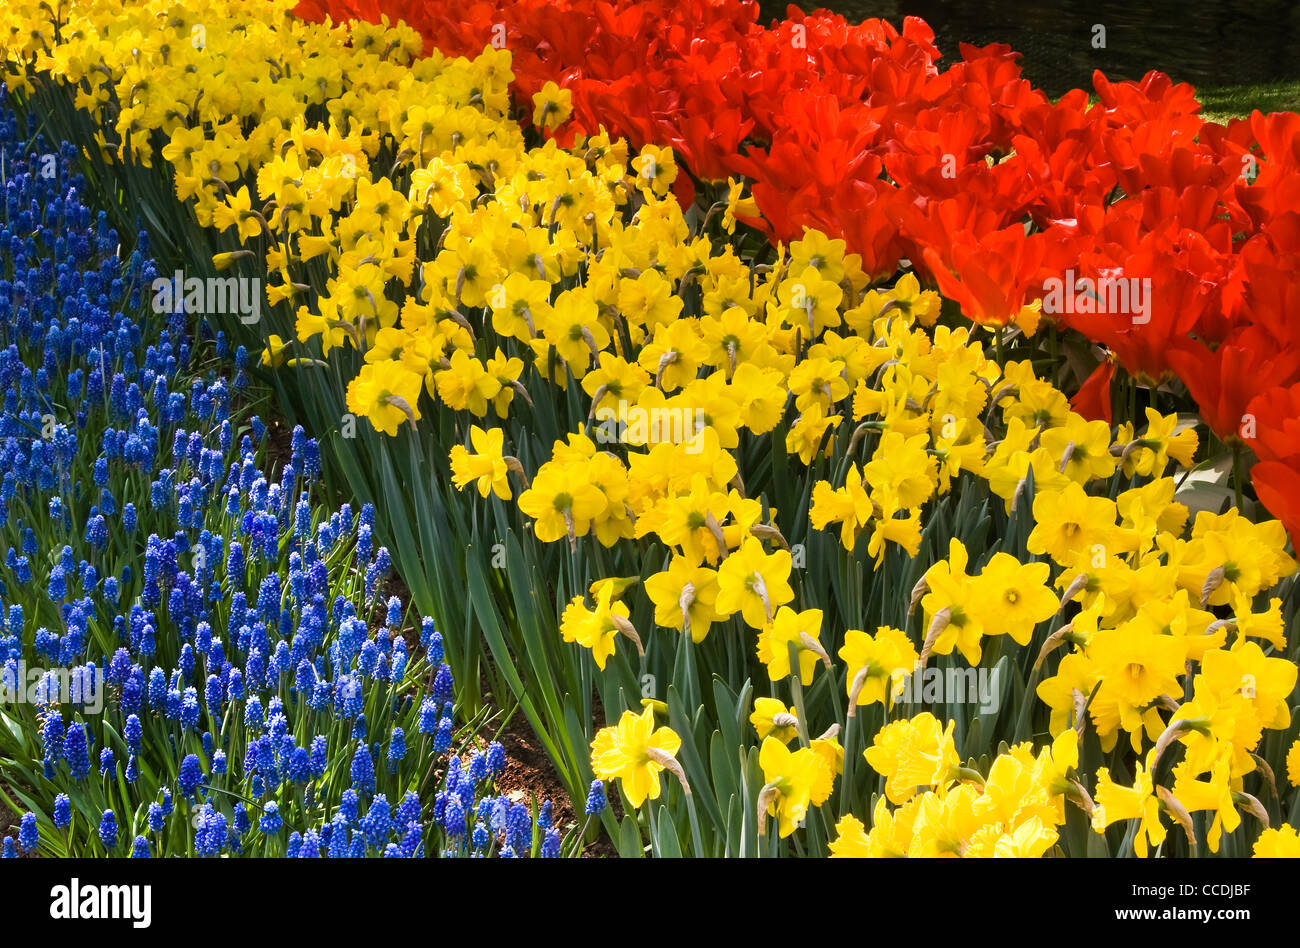 Tulipes, jonquilles et muscaris commun - fleurs de printemps en rouge, jaune et bleu Banque D'Images